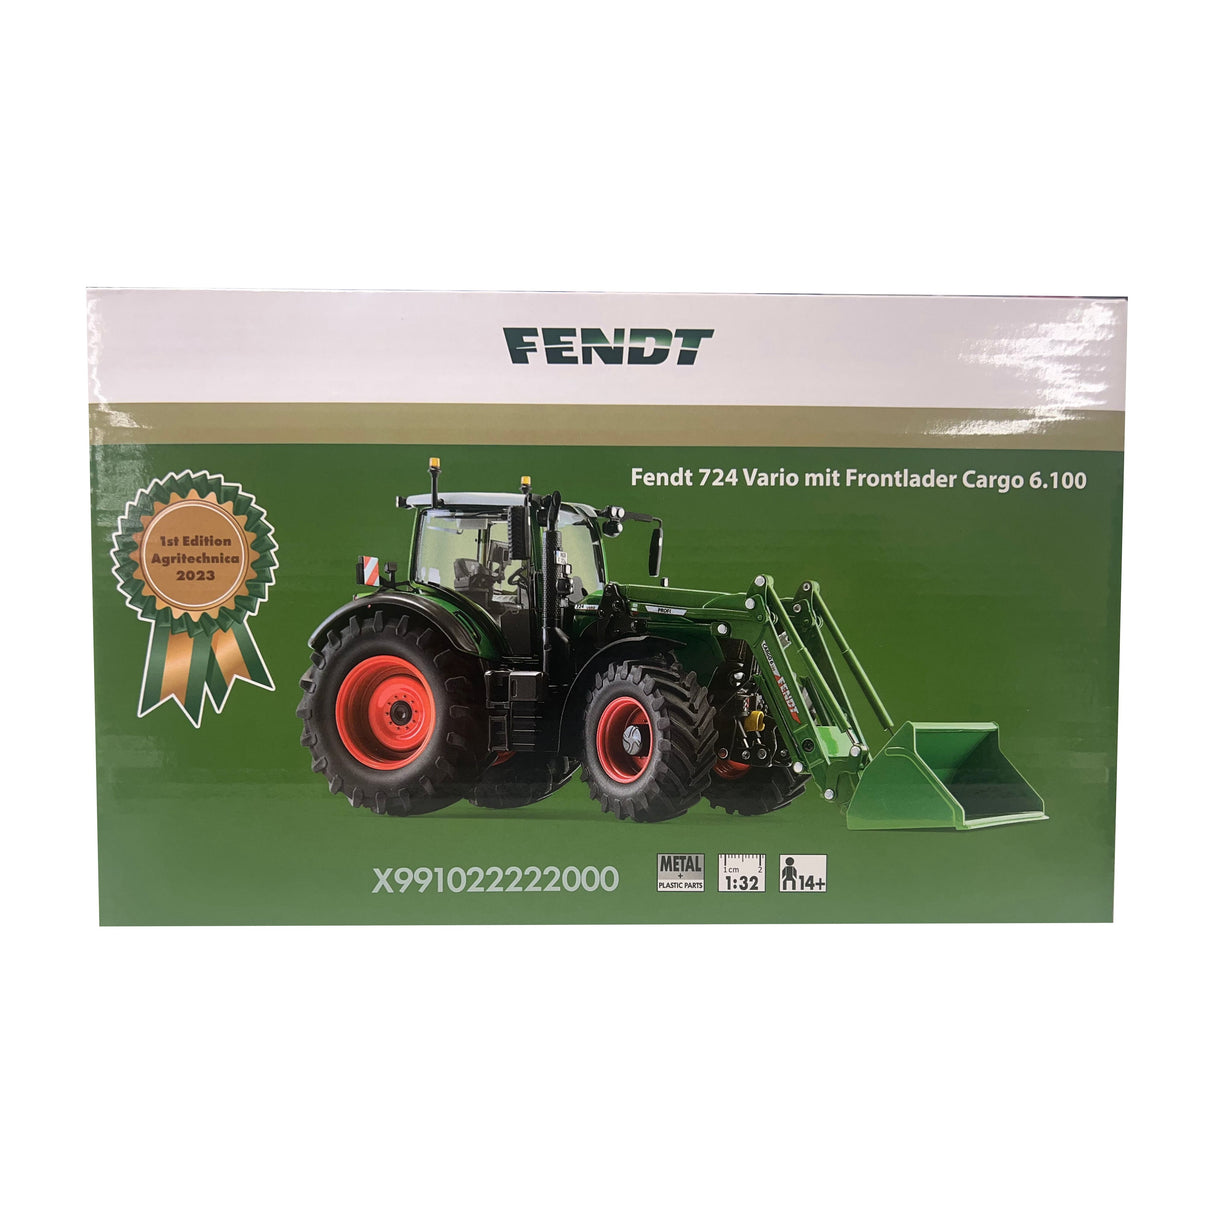 Fendt 724 Vario Scale 1:32 - X991022222000 - Farming Parts